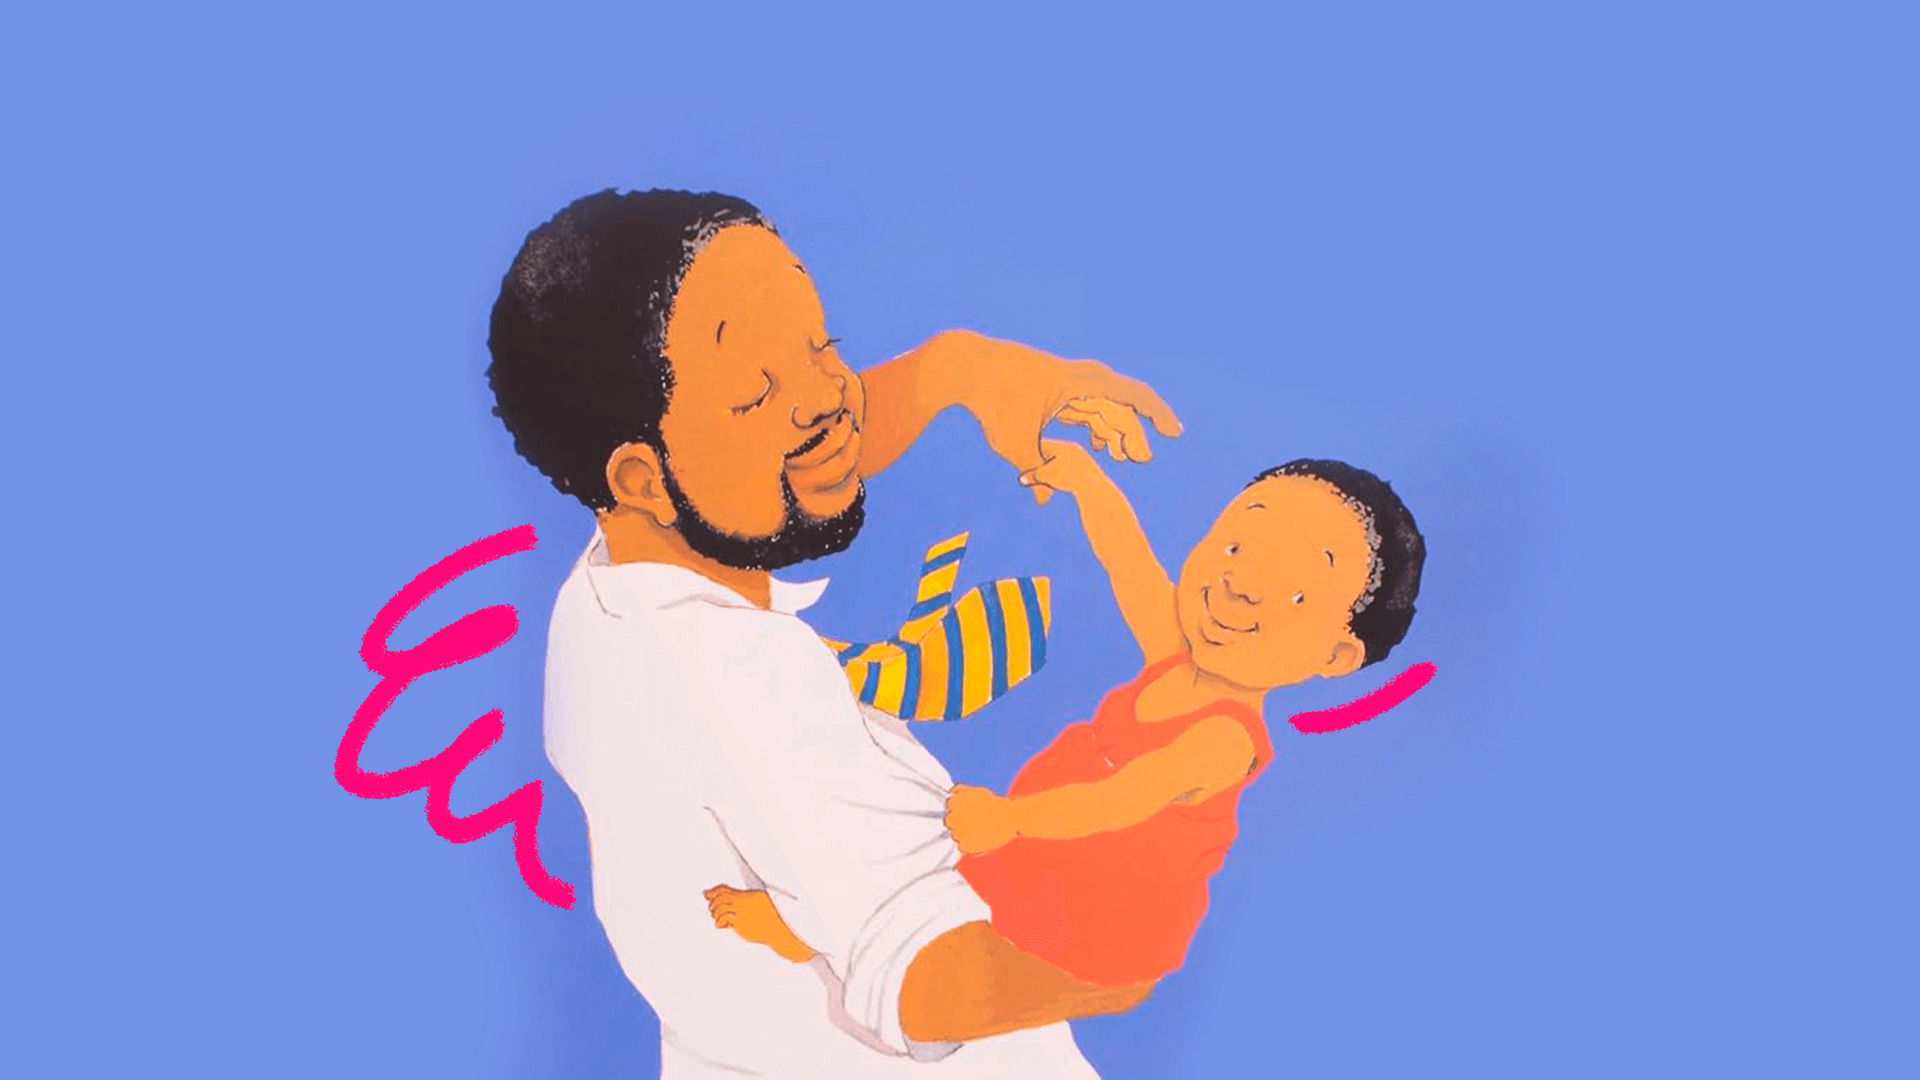 Capa do livro "Tanto, tanto" ilustra matéria com uma lista de livros-abraço. Num fundo azul, um homem negro brinca com um bebê em seu colo.